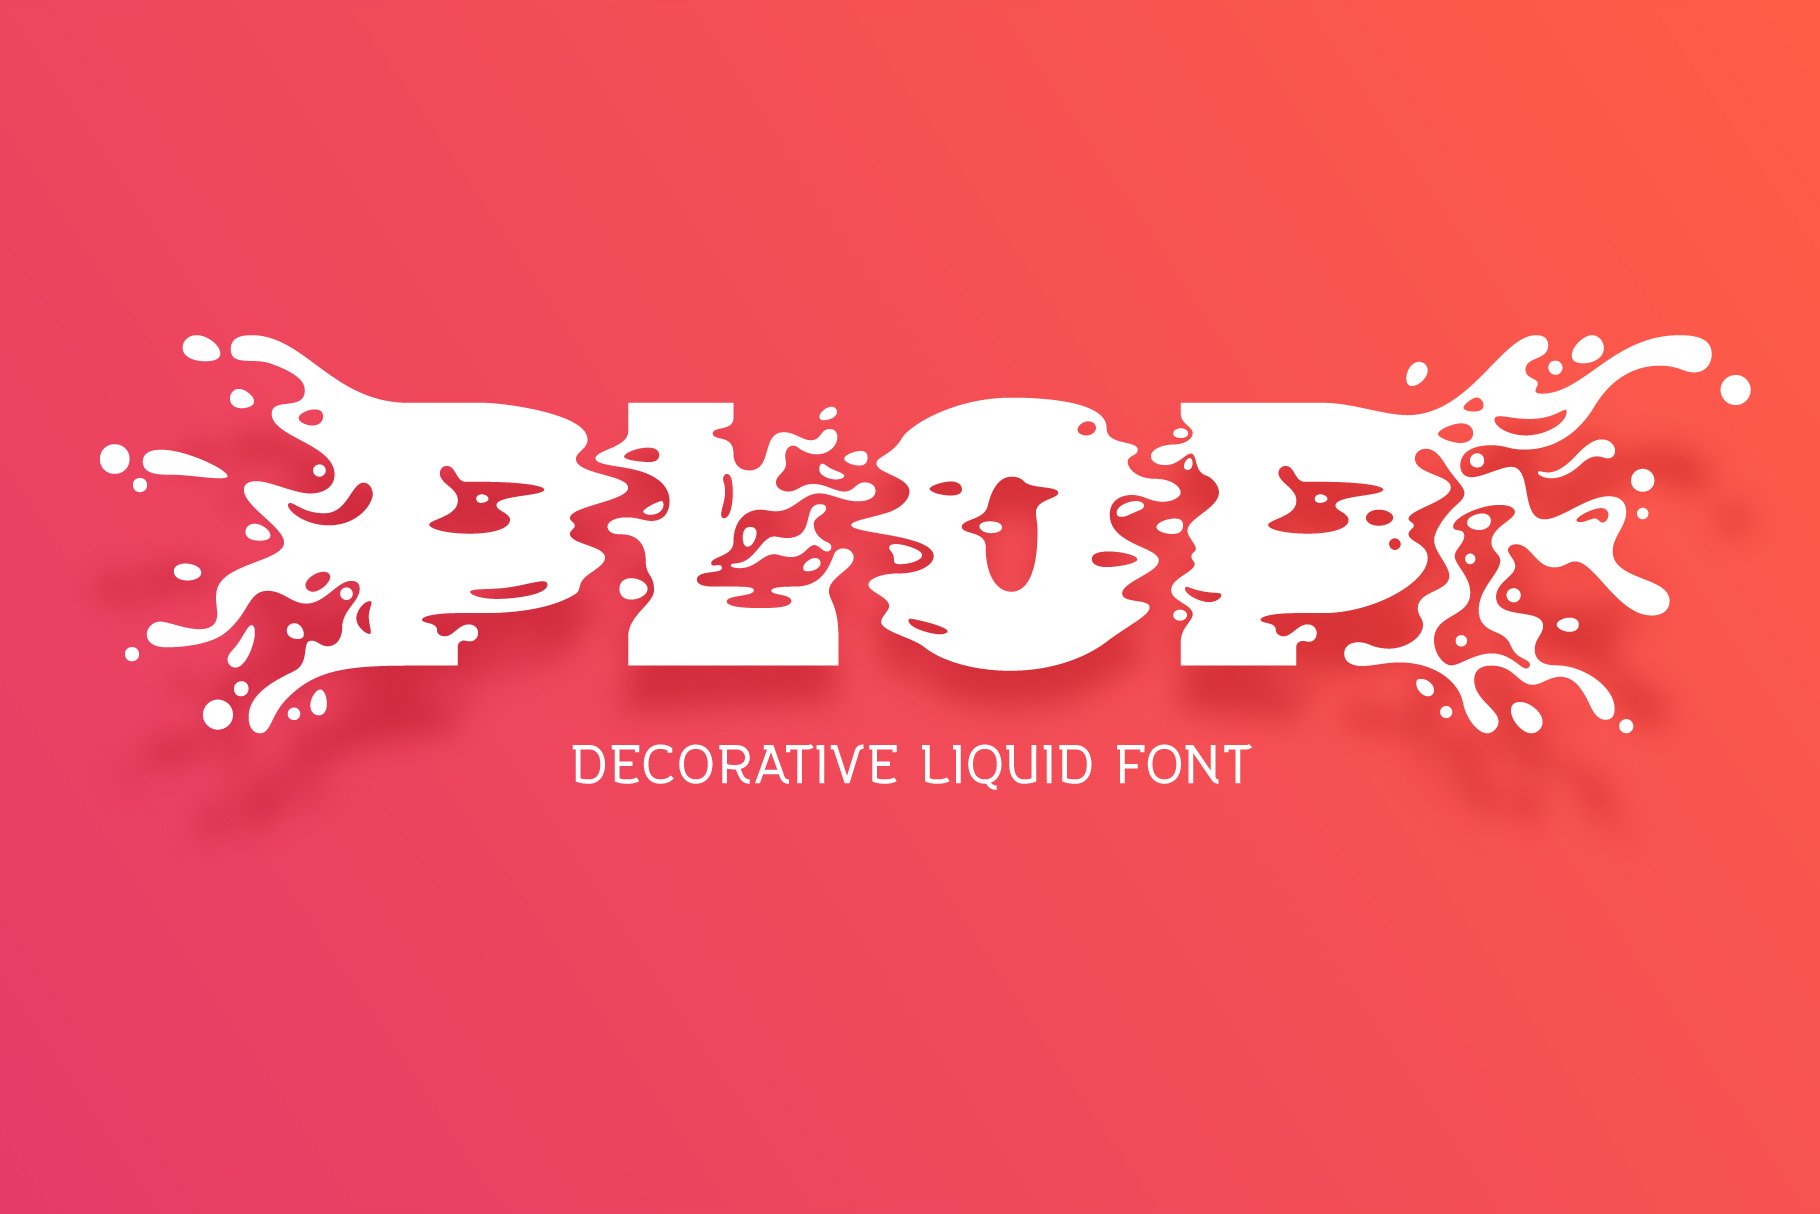 Plop liquid font cover image.